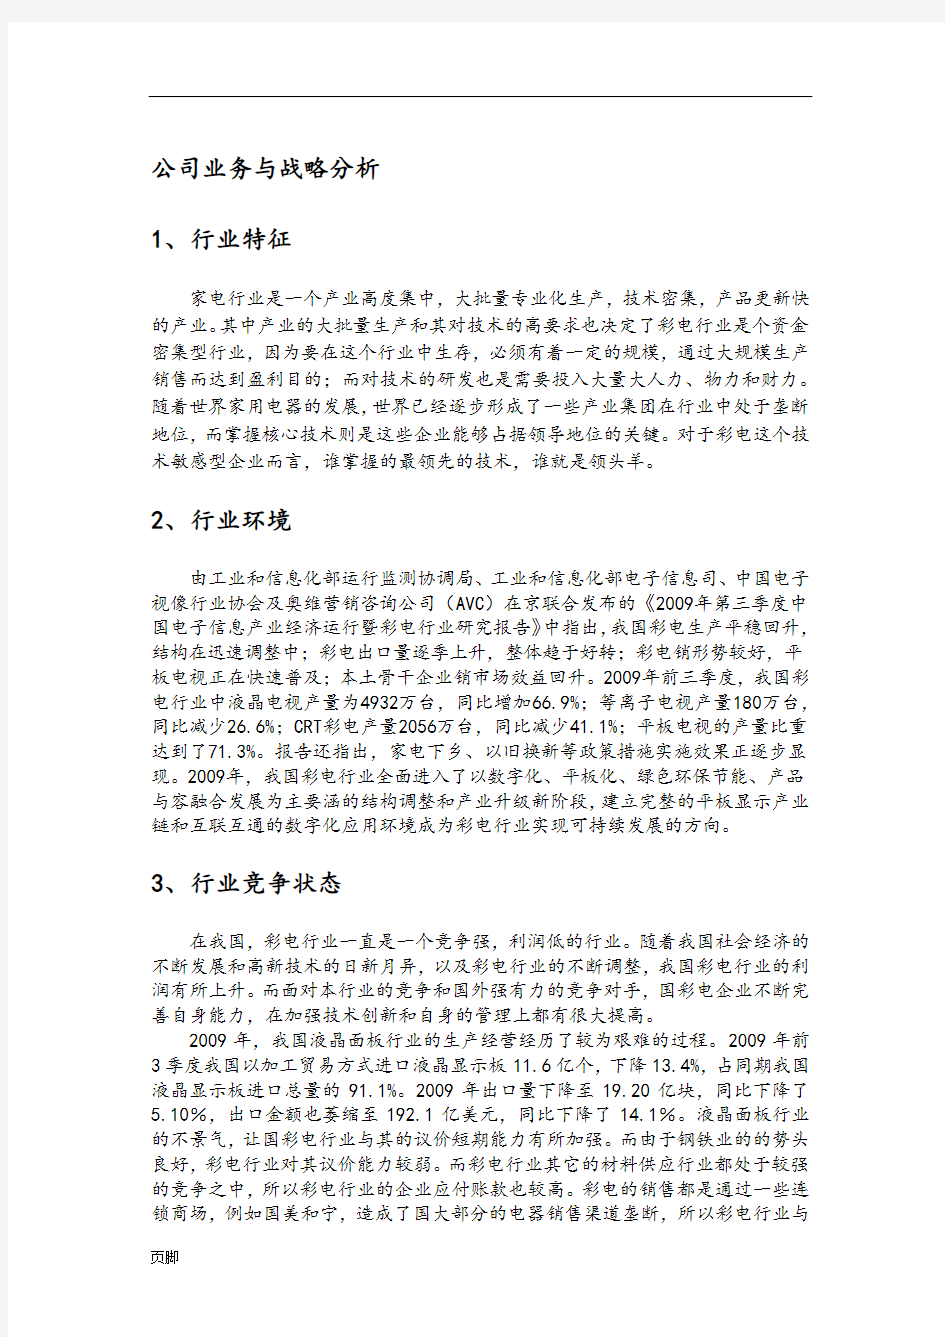 2009年四川长虹公司业务与战略分析报告